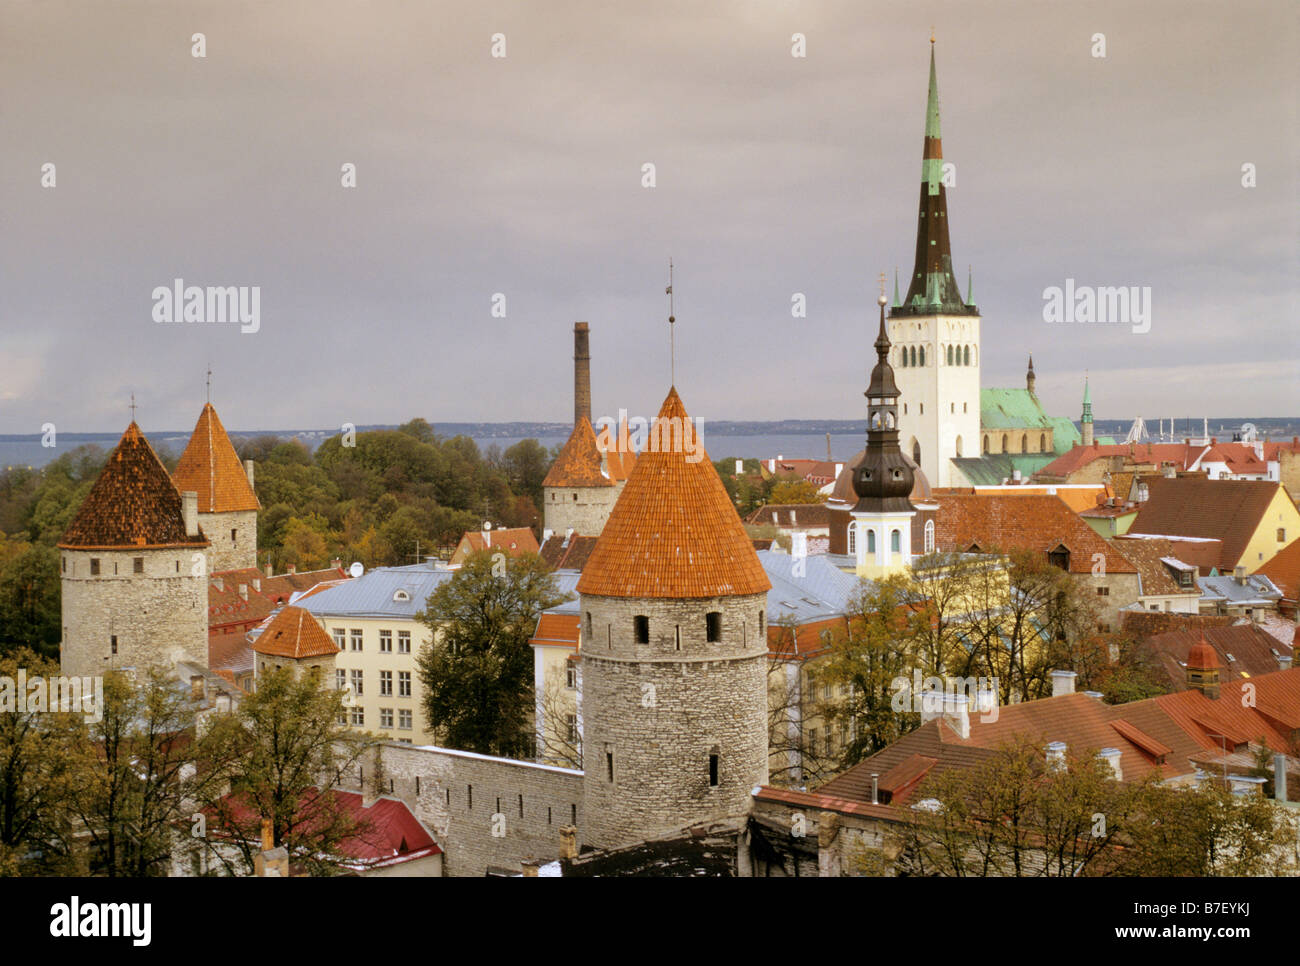 La partie basse de la ville de Tallin Estonie vu du haut de la ville avec la tour de l'église St Olaf Oleviste kirik ou en estonien sur la droite Banque D'Images